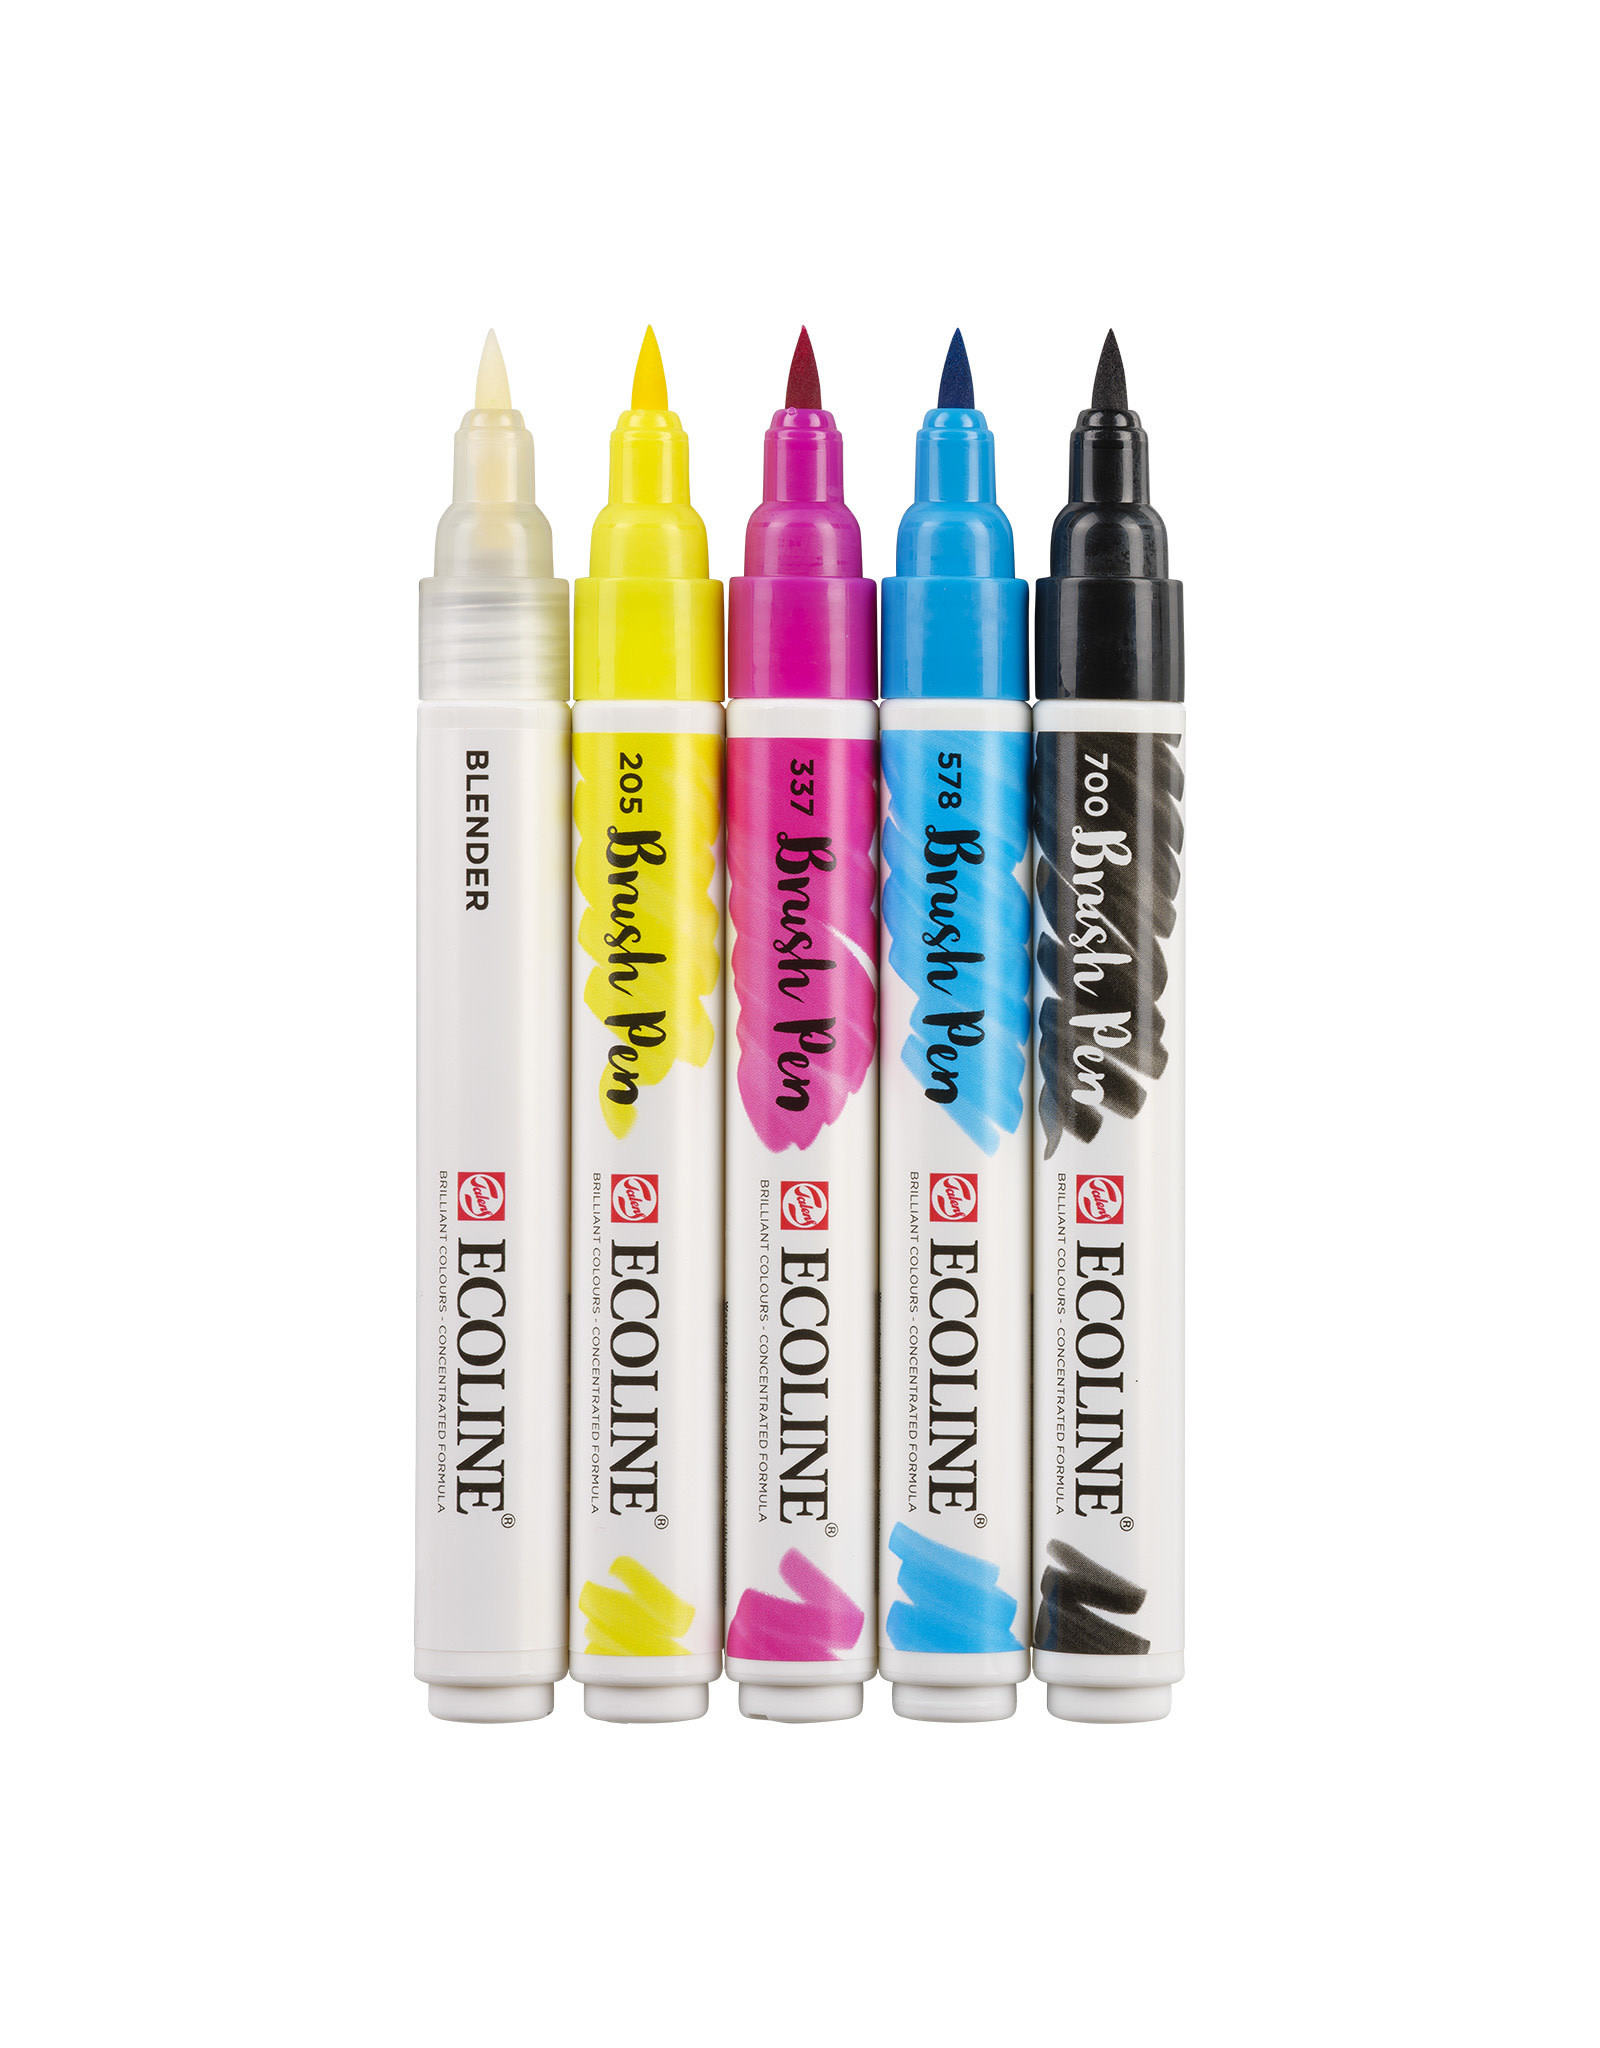 Royal Talens Ecoline Watercolor Brush Pen - 10 Color Set